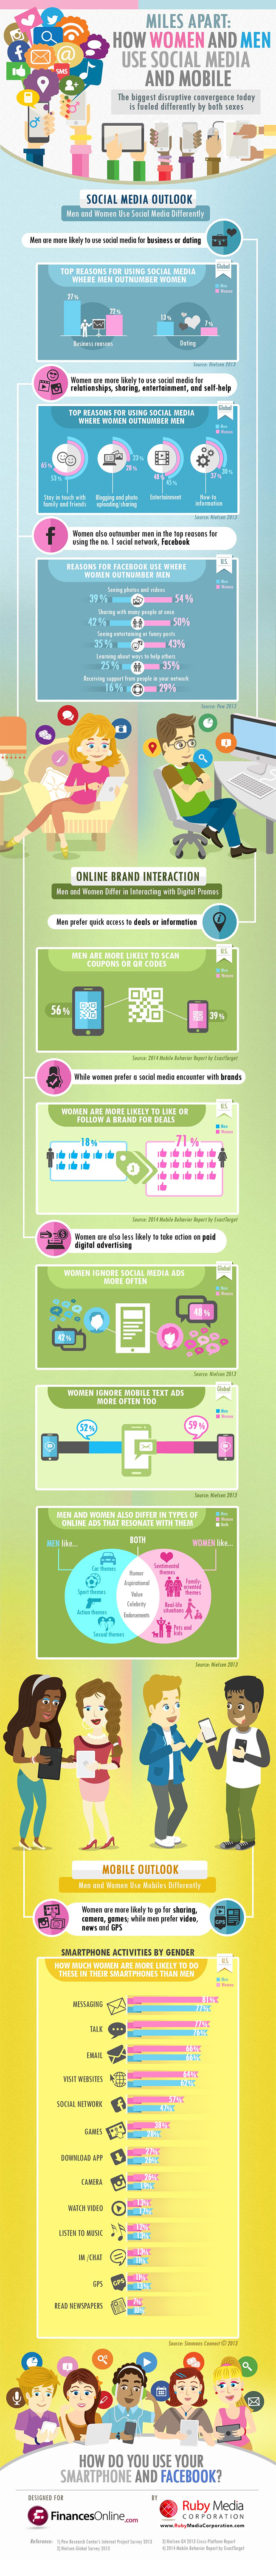 Infografia - ¿Cómo interactúan hombres y mujeres con las marcas en redes sociales?